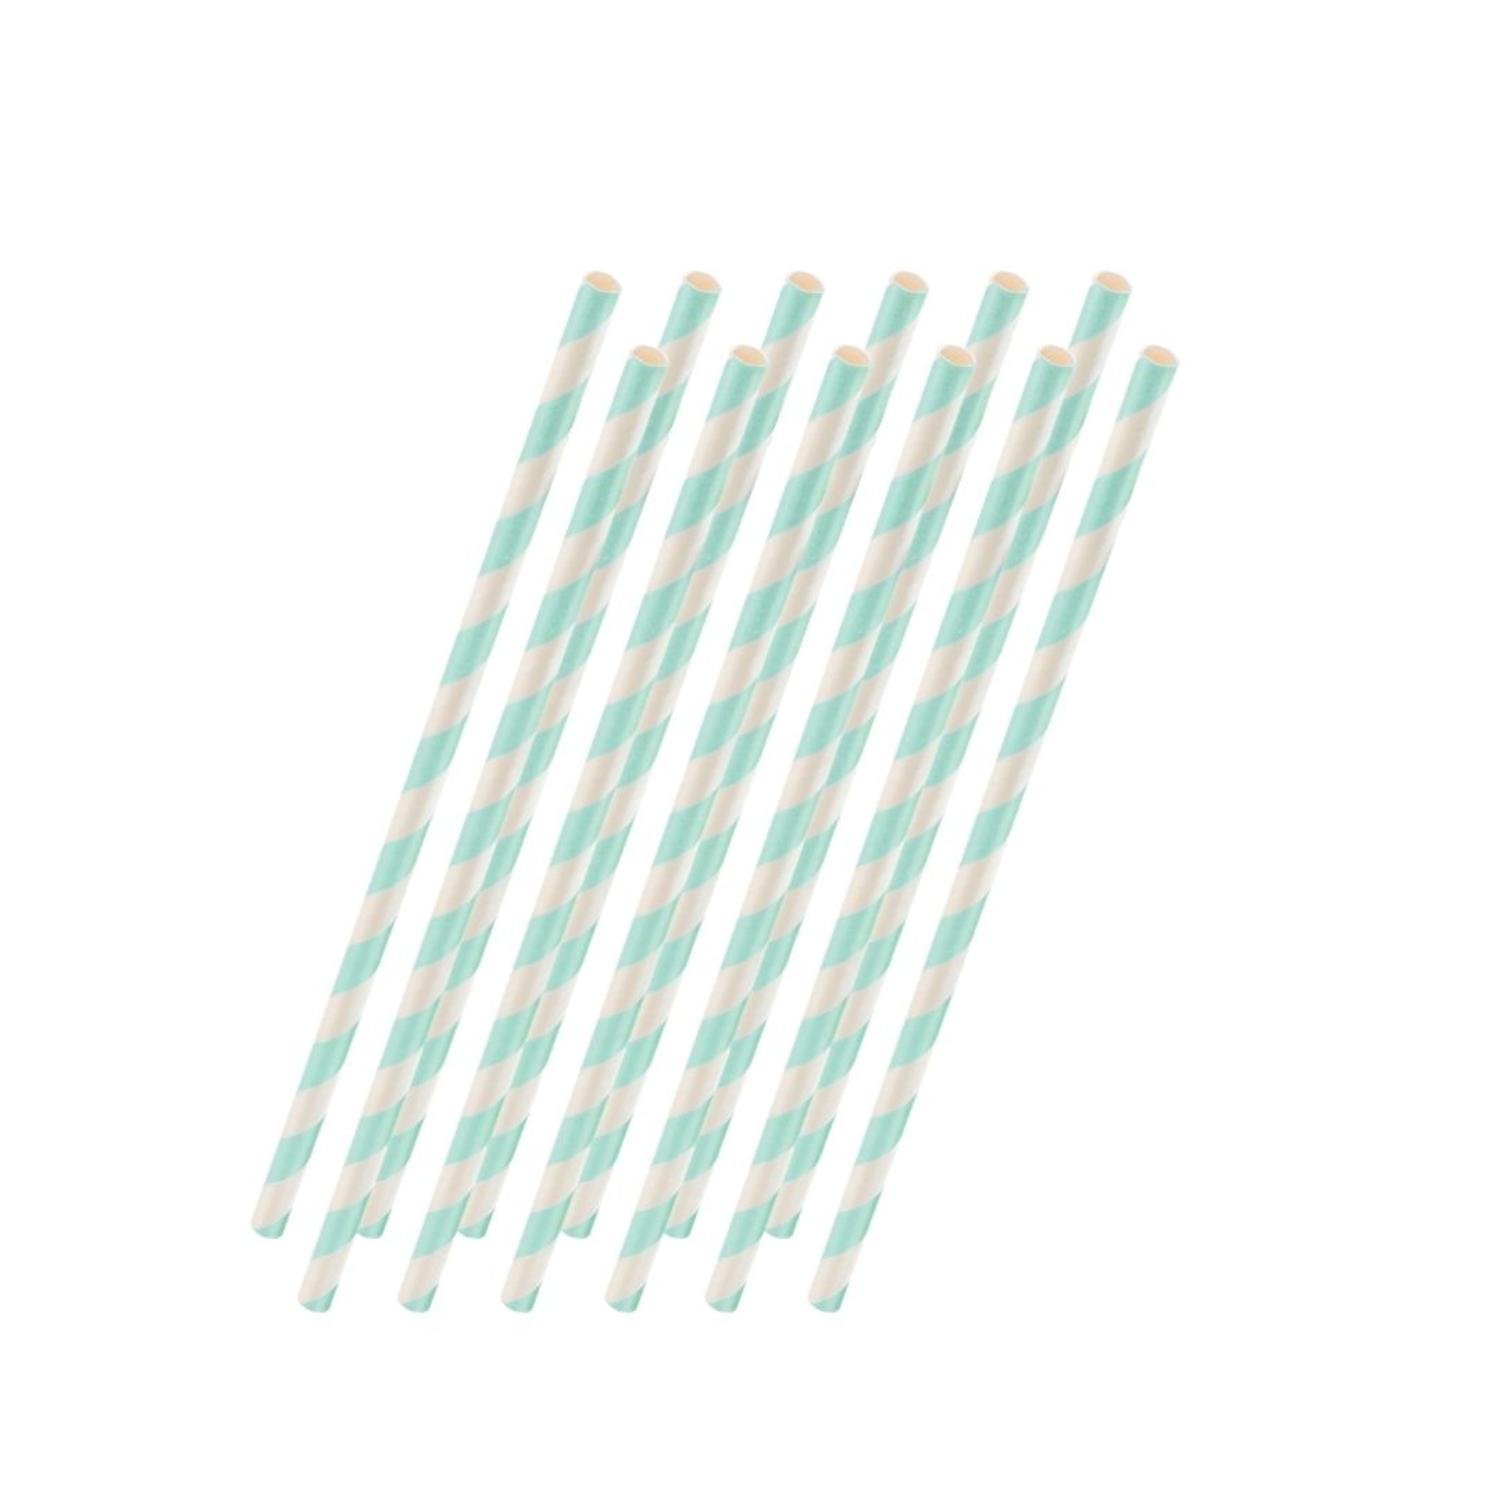 Mint Striped Paper Straws - 25 Ct.